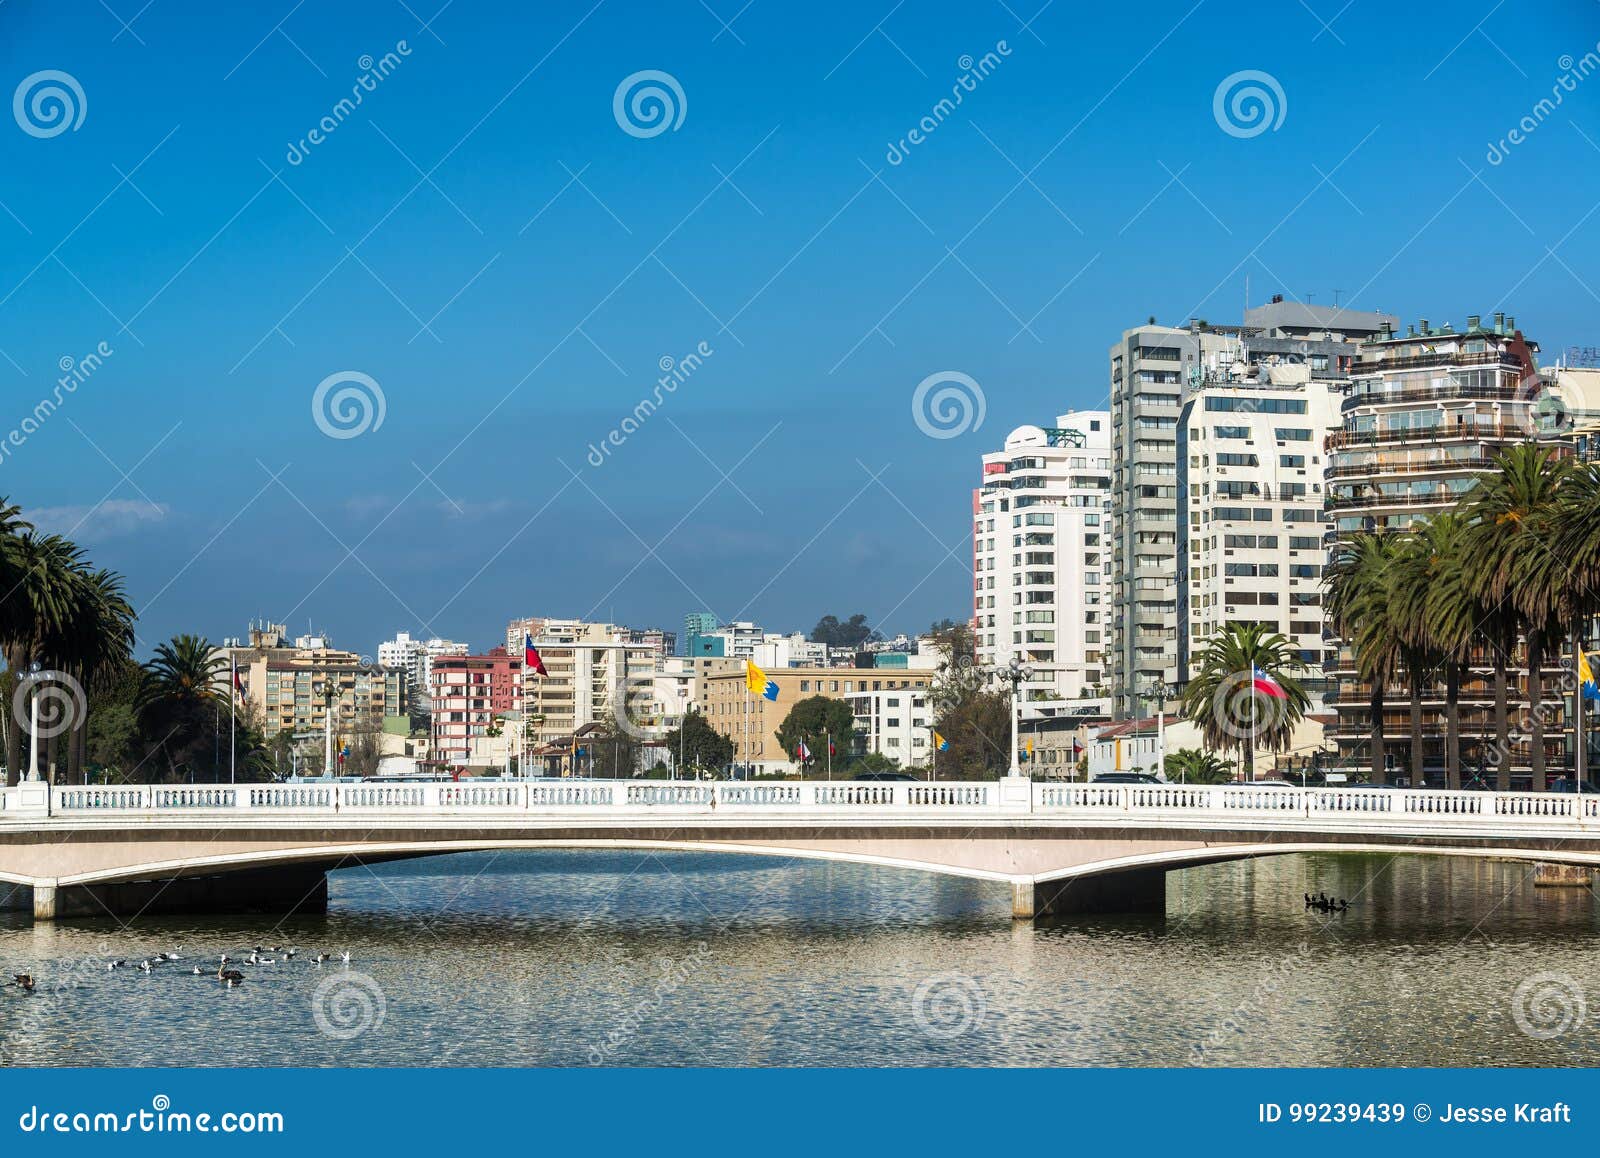 bridge and estuary in vina del mar